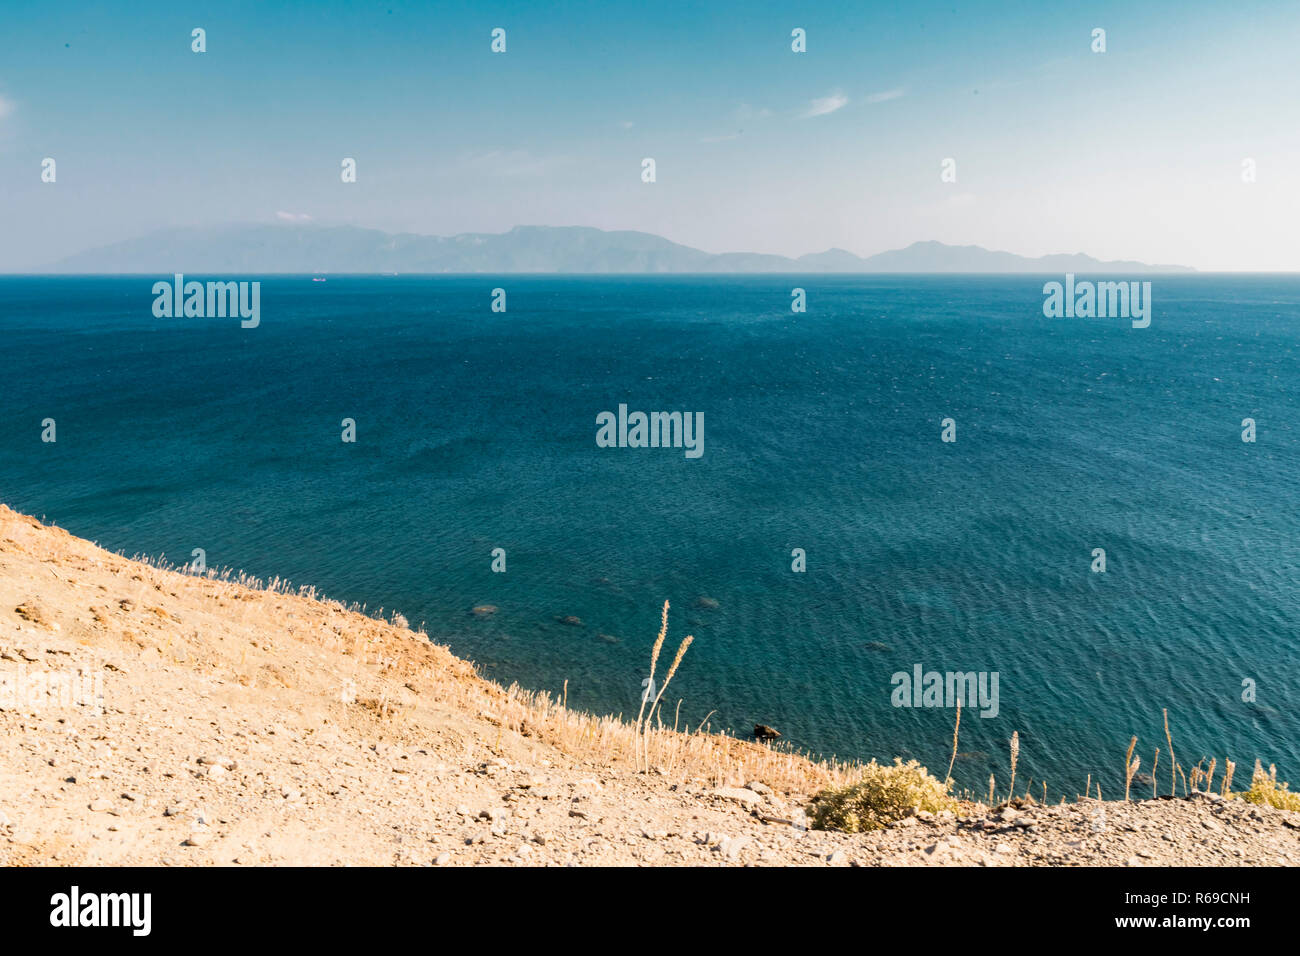 Paysage d'une vaste mer turquoise d'une falaise, avec des îles volcaniques dans l'arrière-plan sur la ligne d'horizon. Banque D'Images